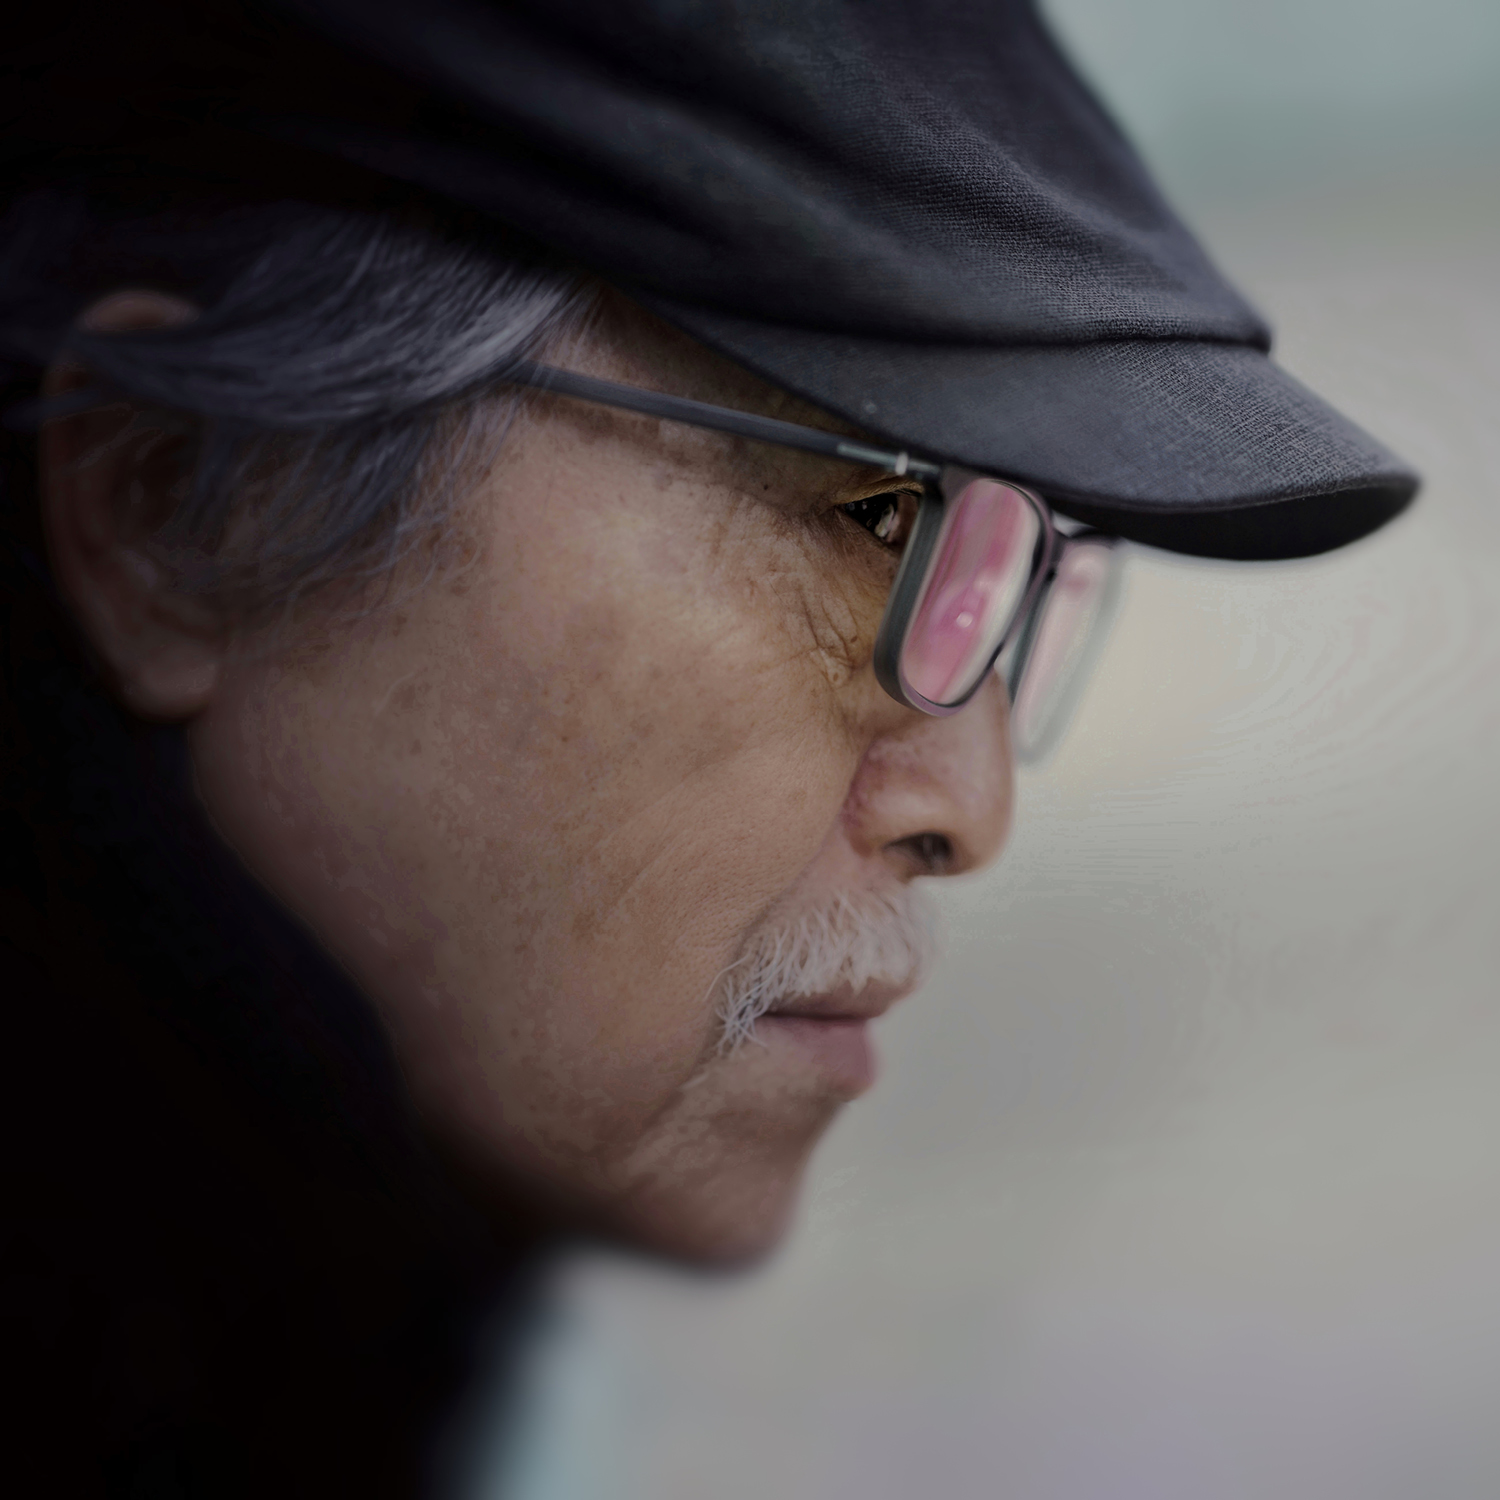  攝影家張照堂辭世 享壽81歲 曾獲金馬獎終身成就獎、國家藝文獎 